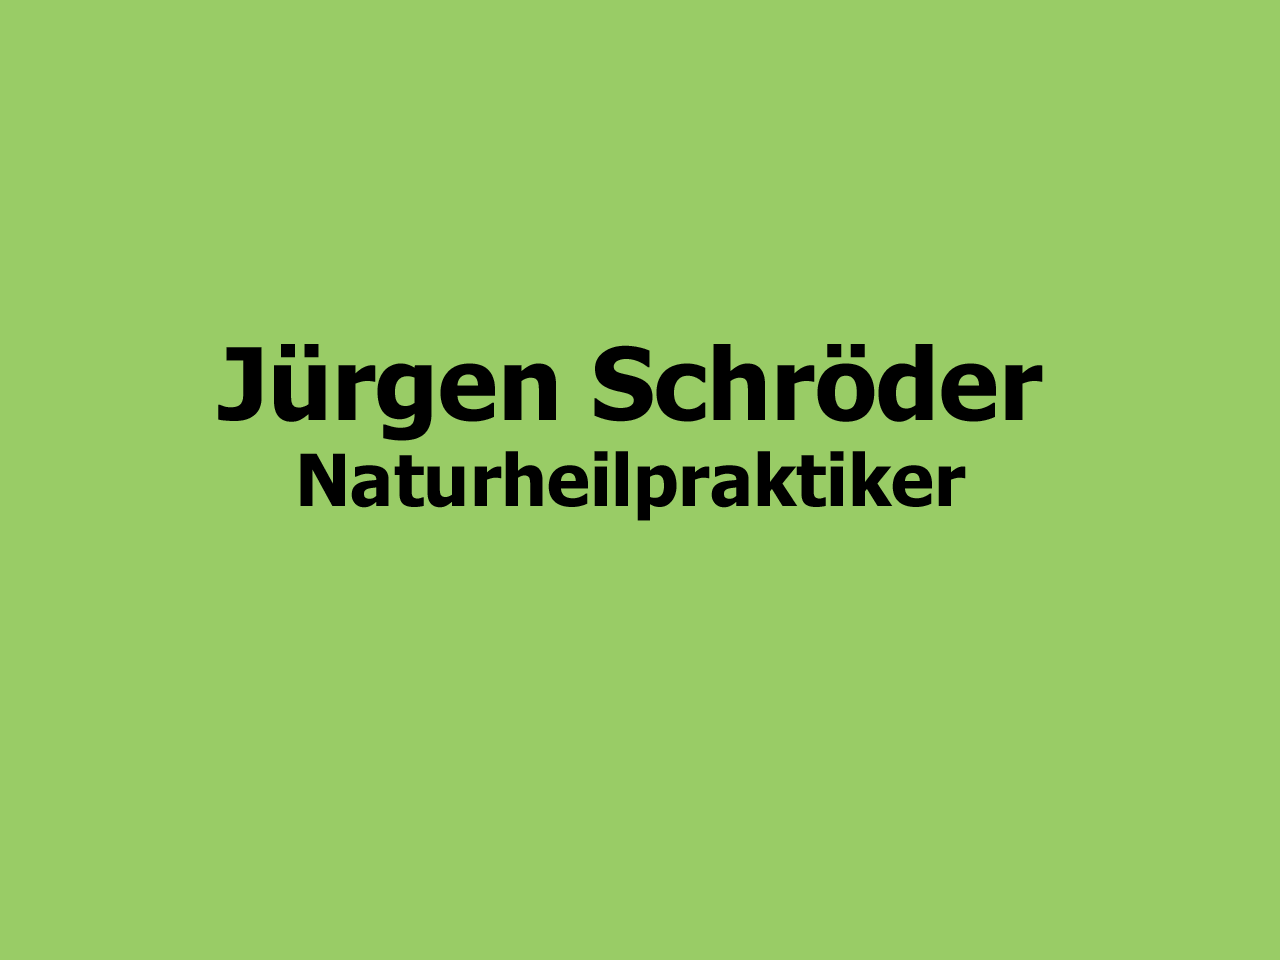 Juergen Schroeder